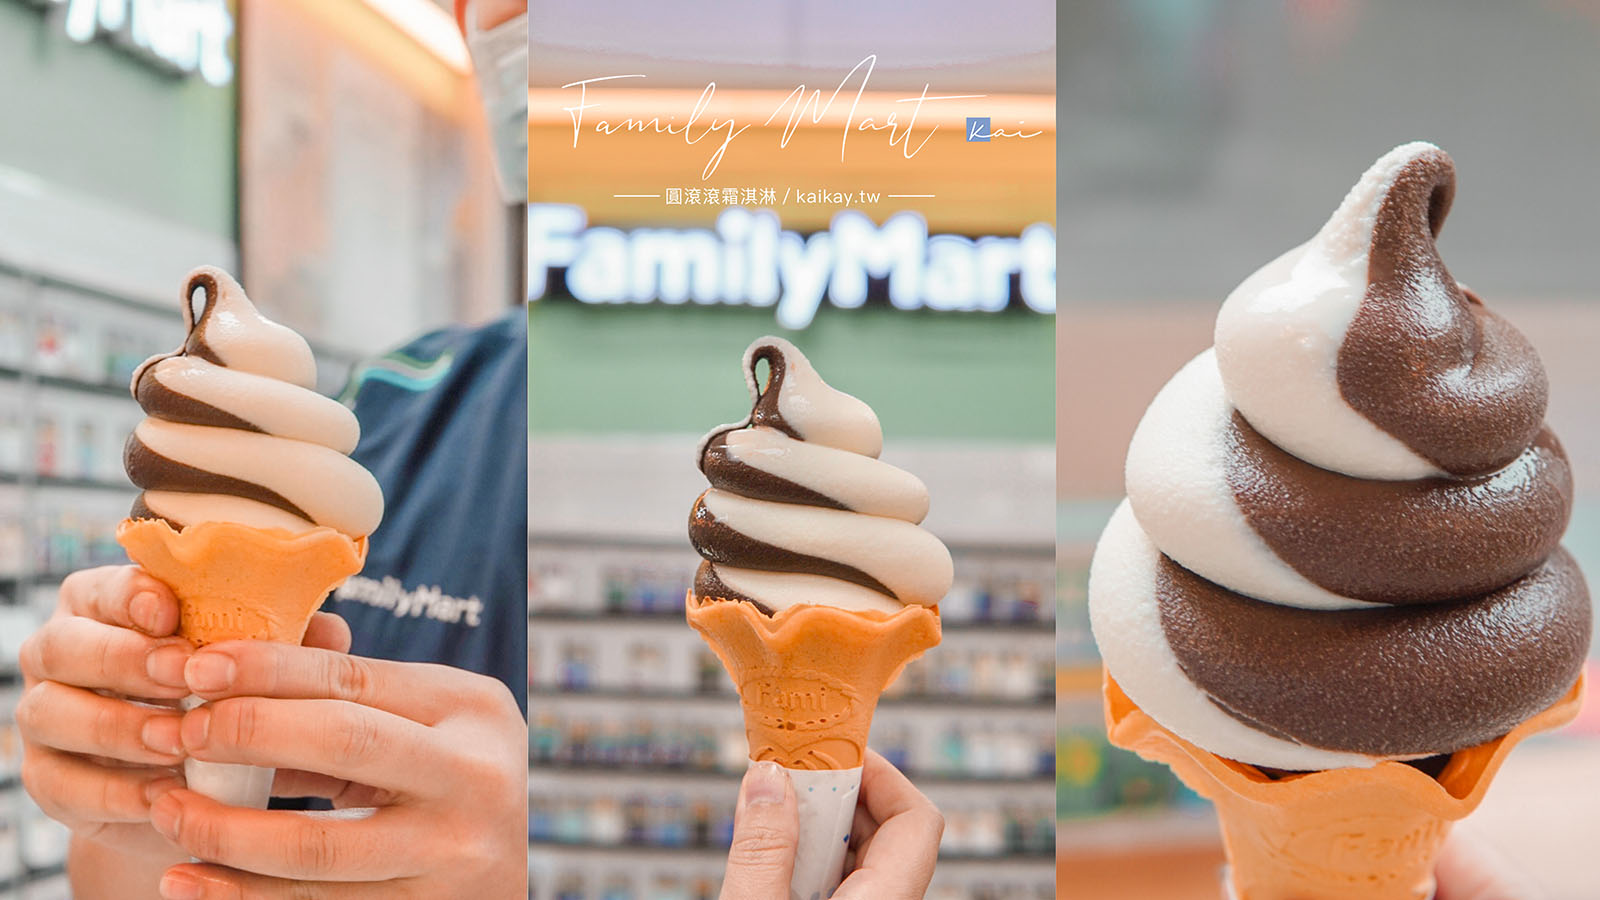 閱讀文章：☆【超商美食】全家巧克力霜淇淋「圓滾滾」造型超可愛。全台新增58間門市販售一覽表